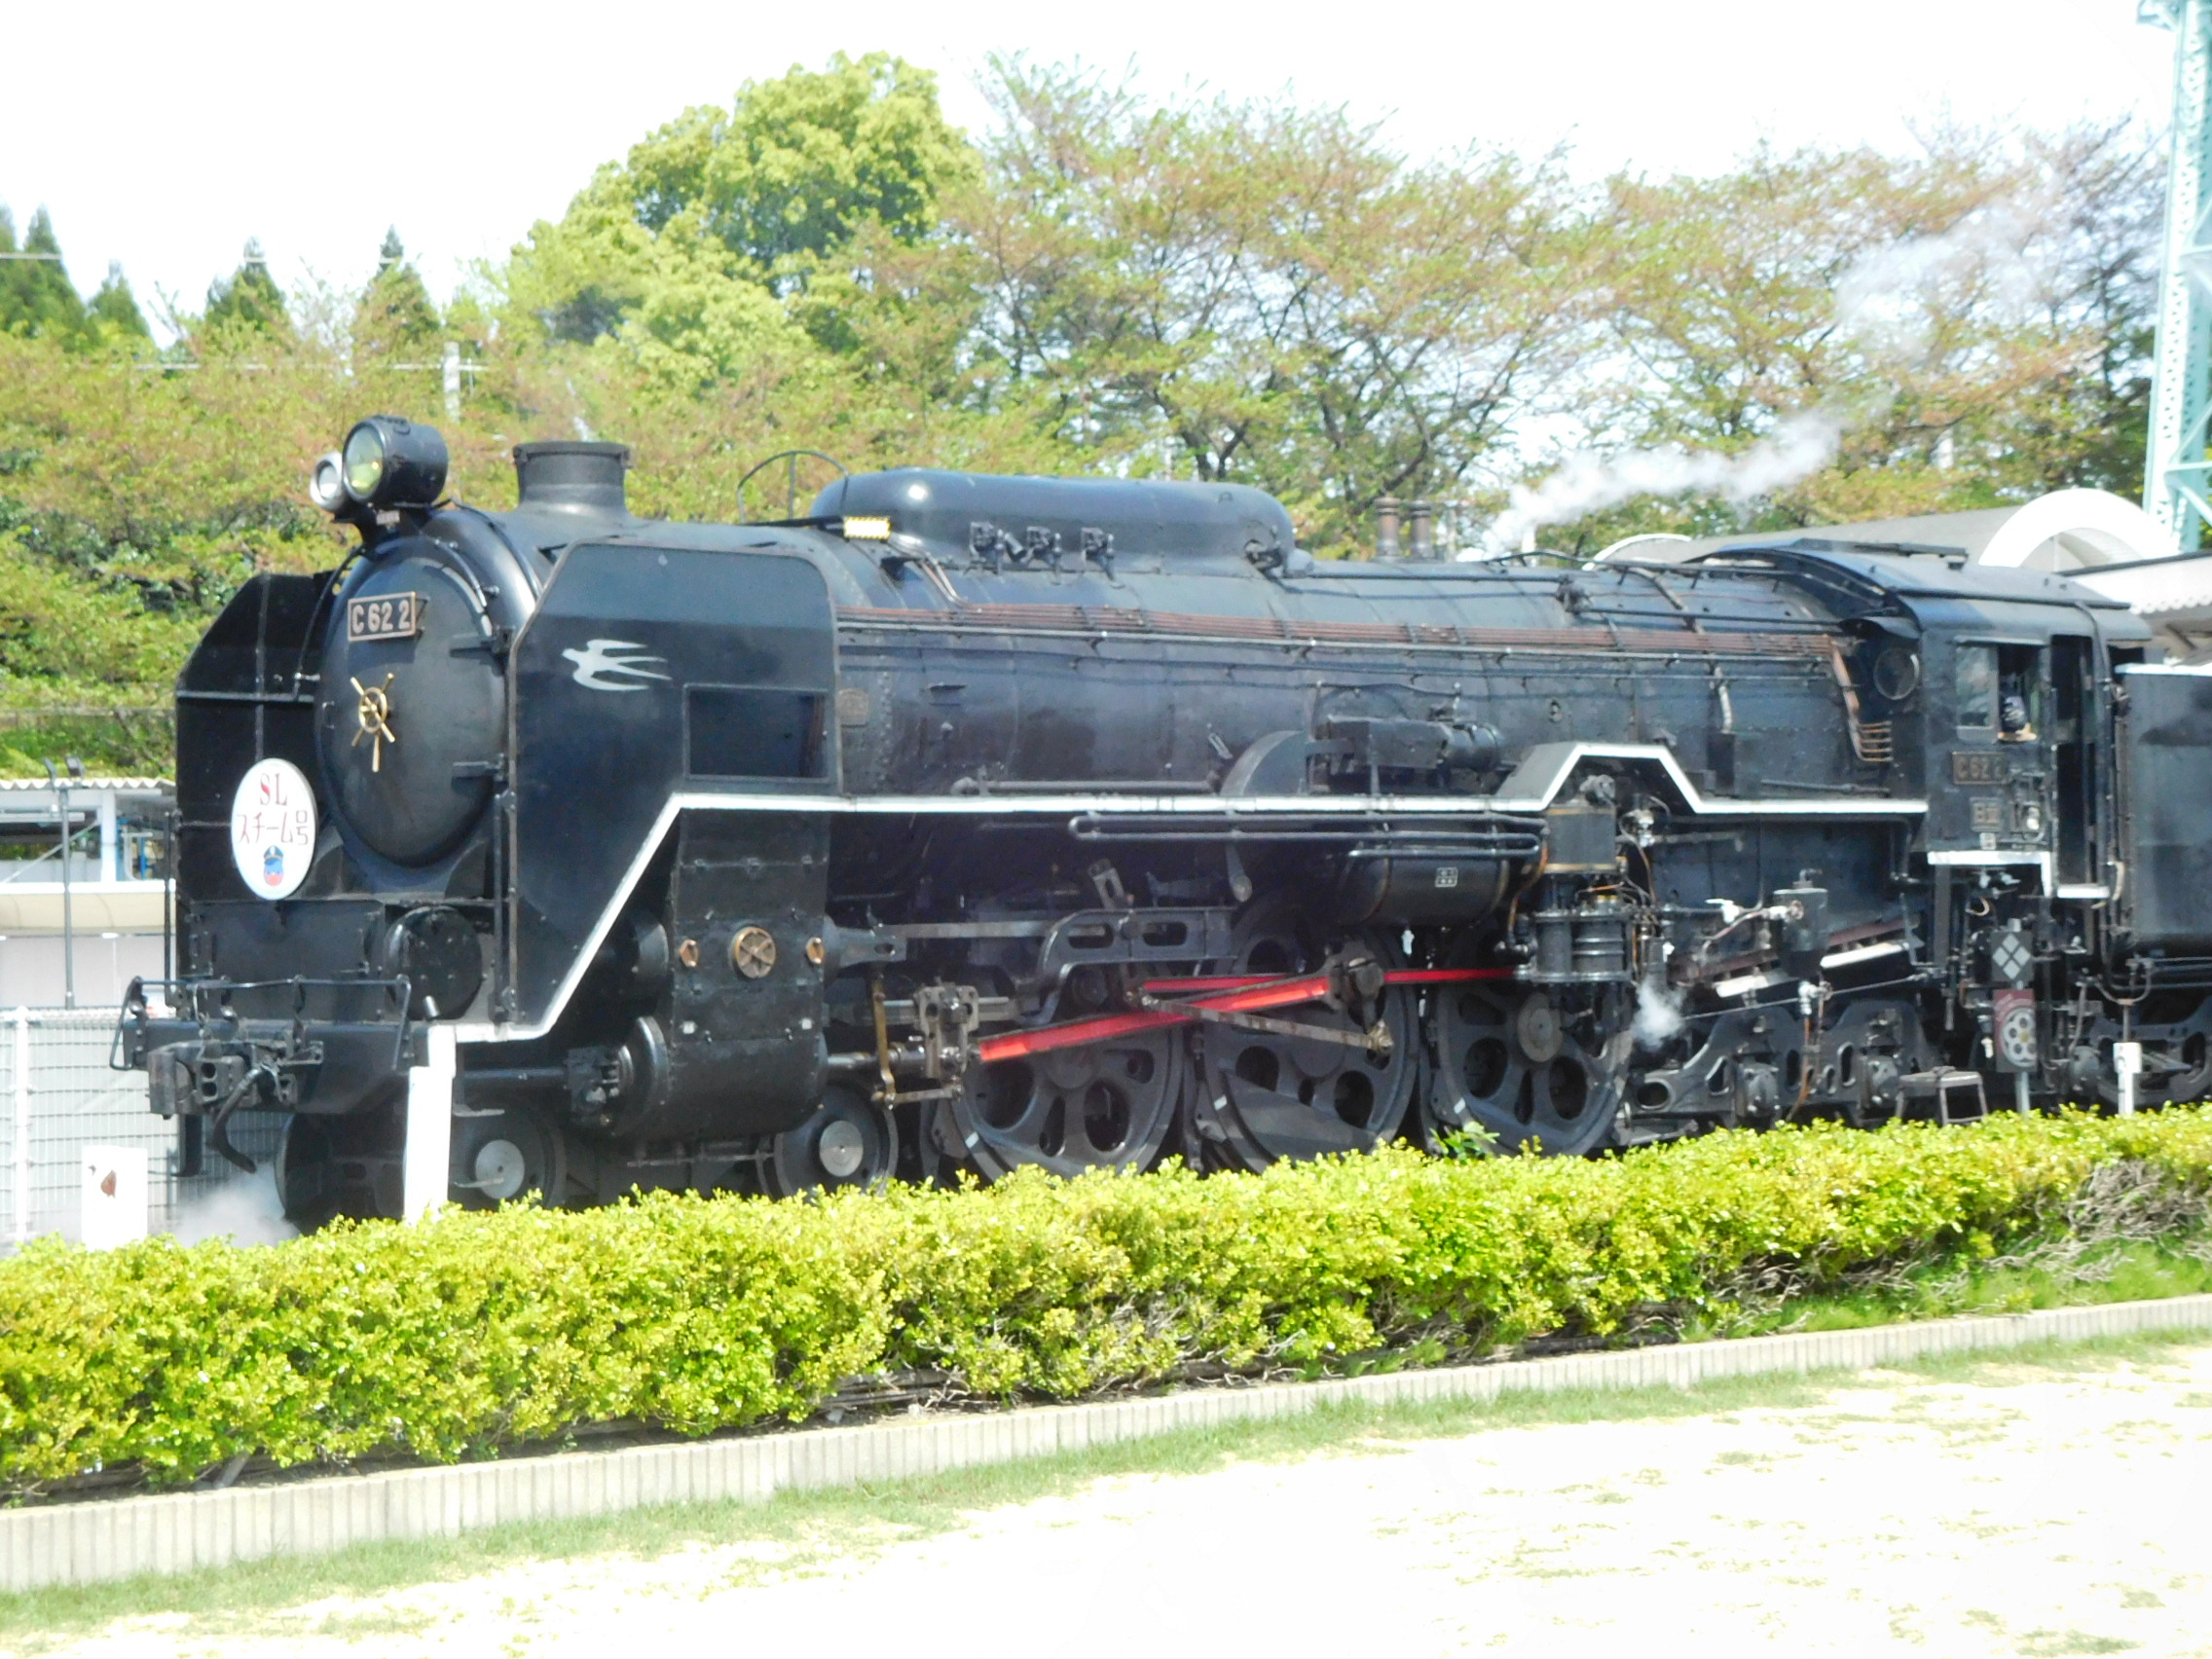 科普为战时运输而生日本铁道省国有铁道d52型蒸汽机车